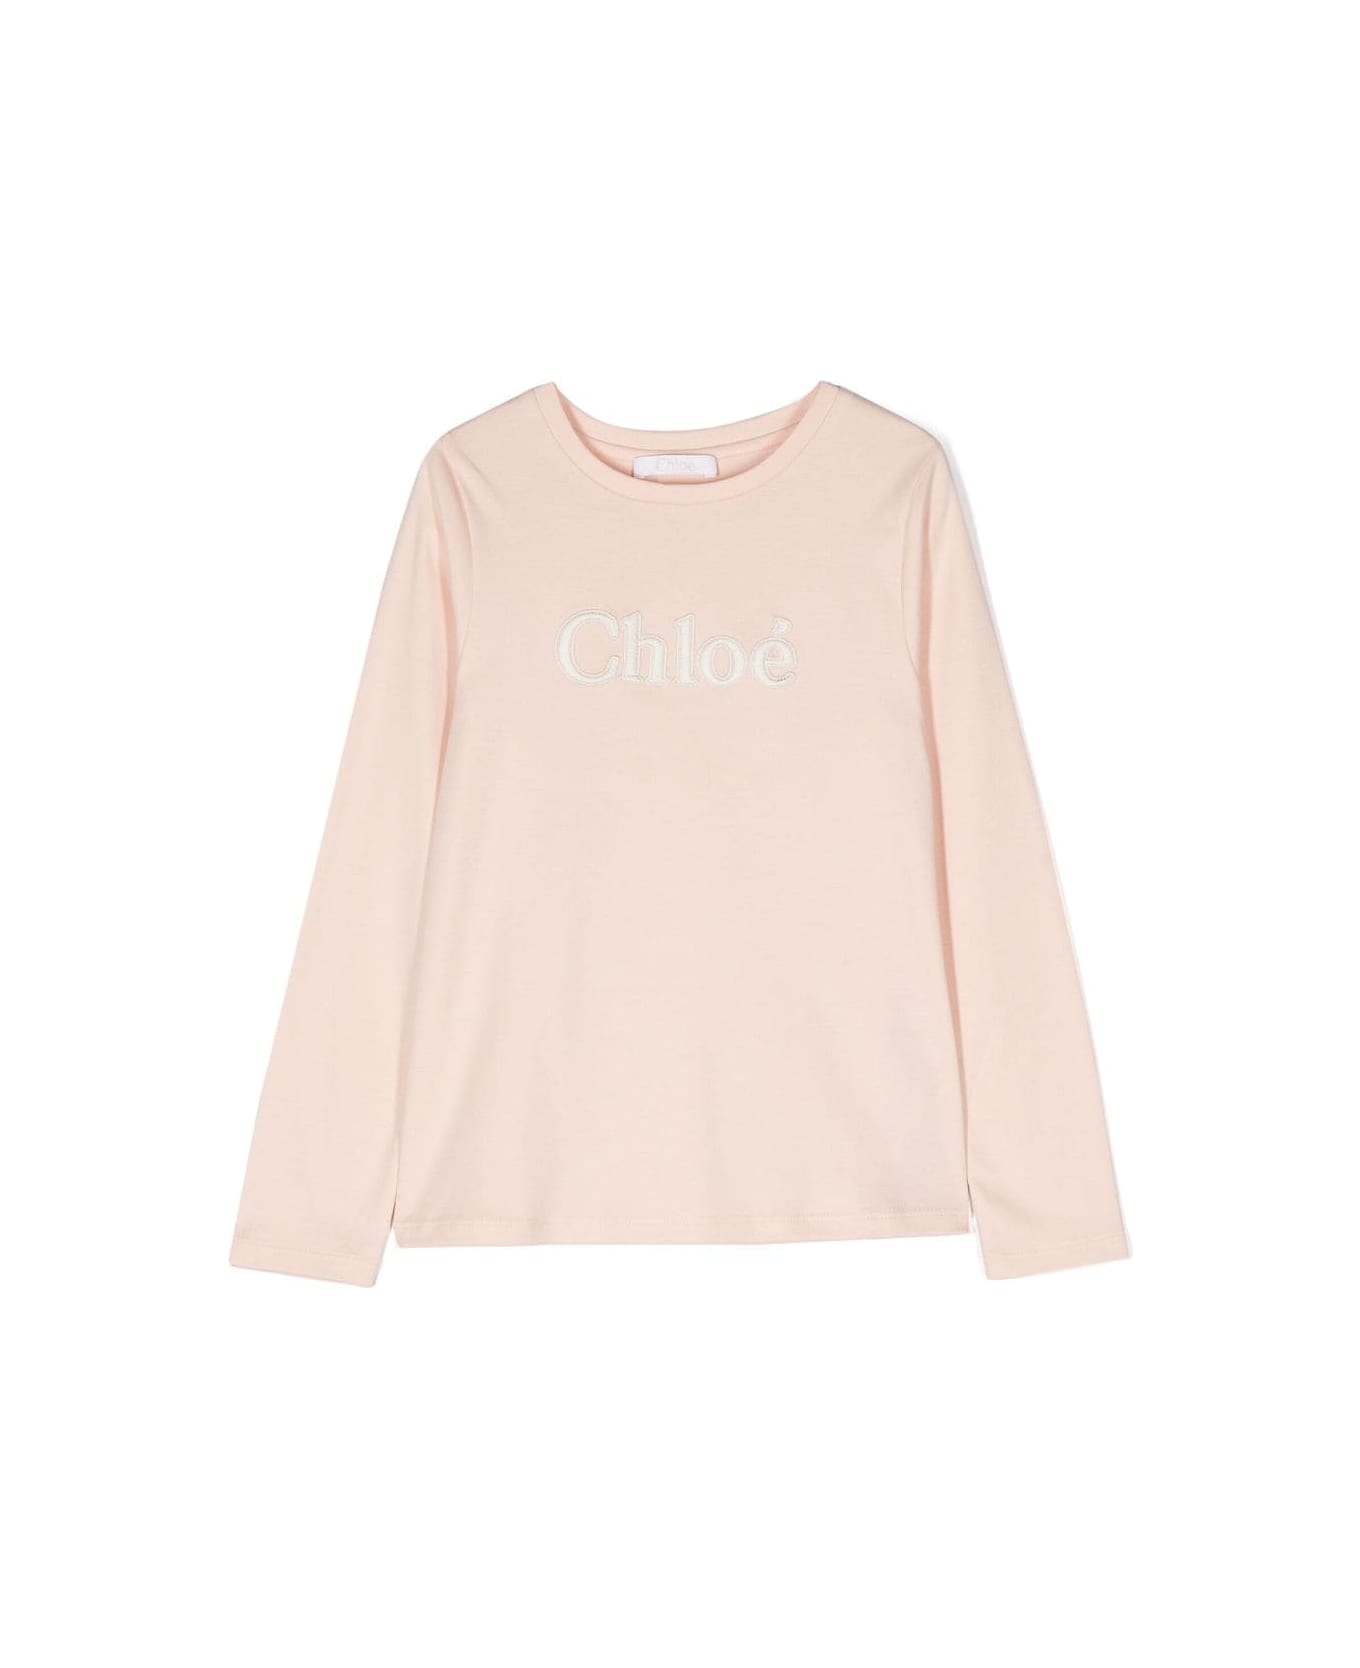 Chloé Chloe T-shirt Bianca Cipria In Jersey Di Cotone Bambina - Bianco